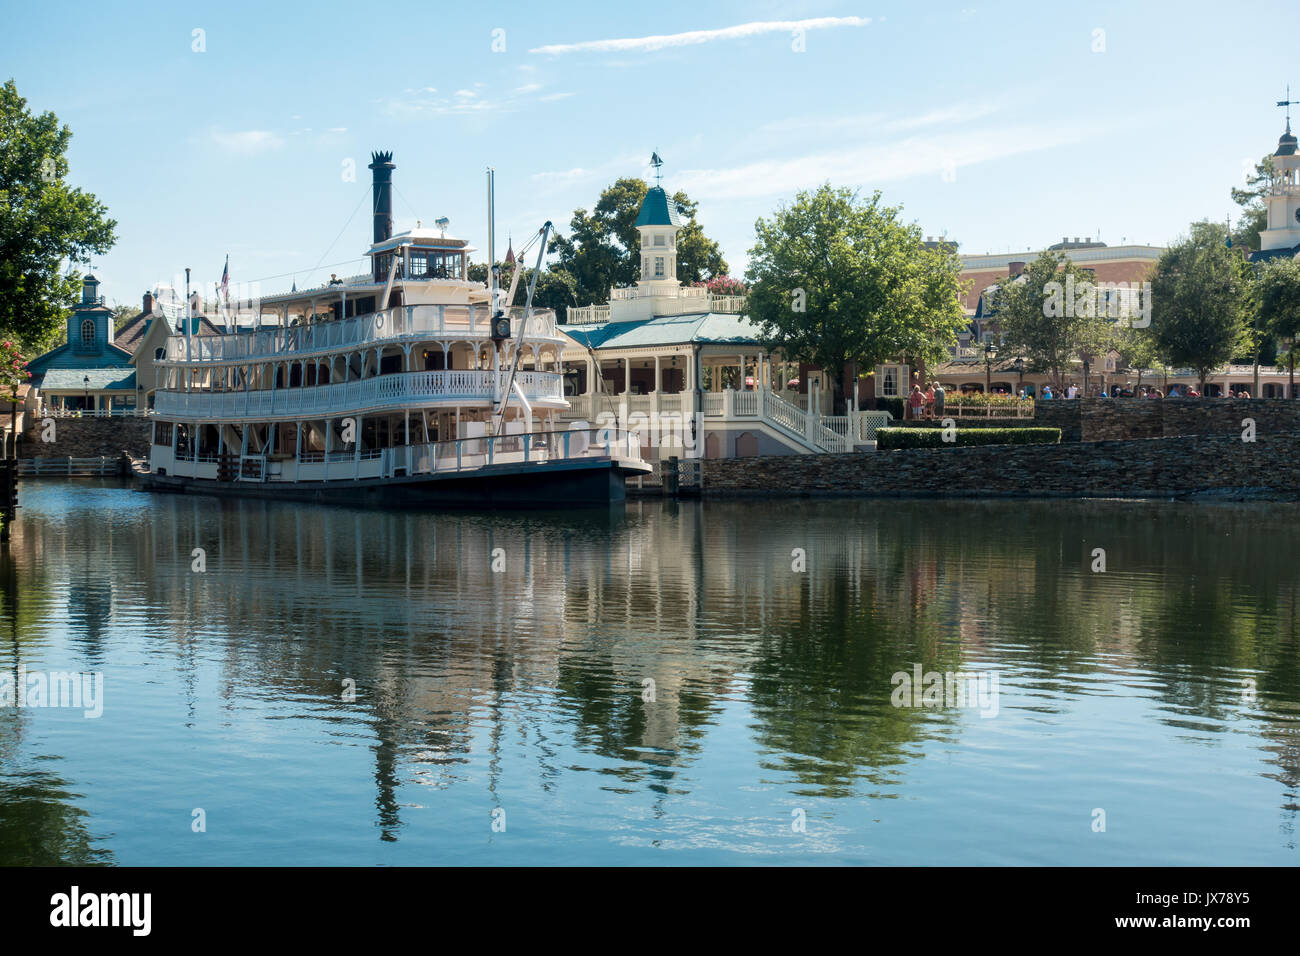 Liberty belle river boat sur la place de la liberté, Magic Kingdom, Walt Disney World, Orlando, Floride. Banque D'Images